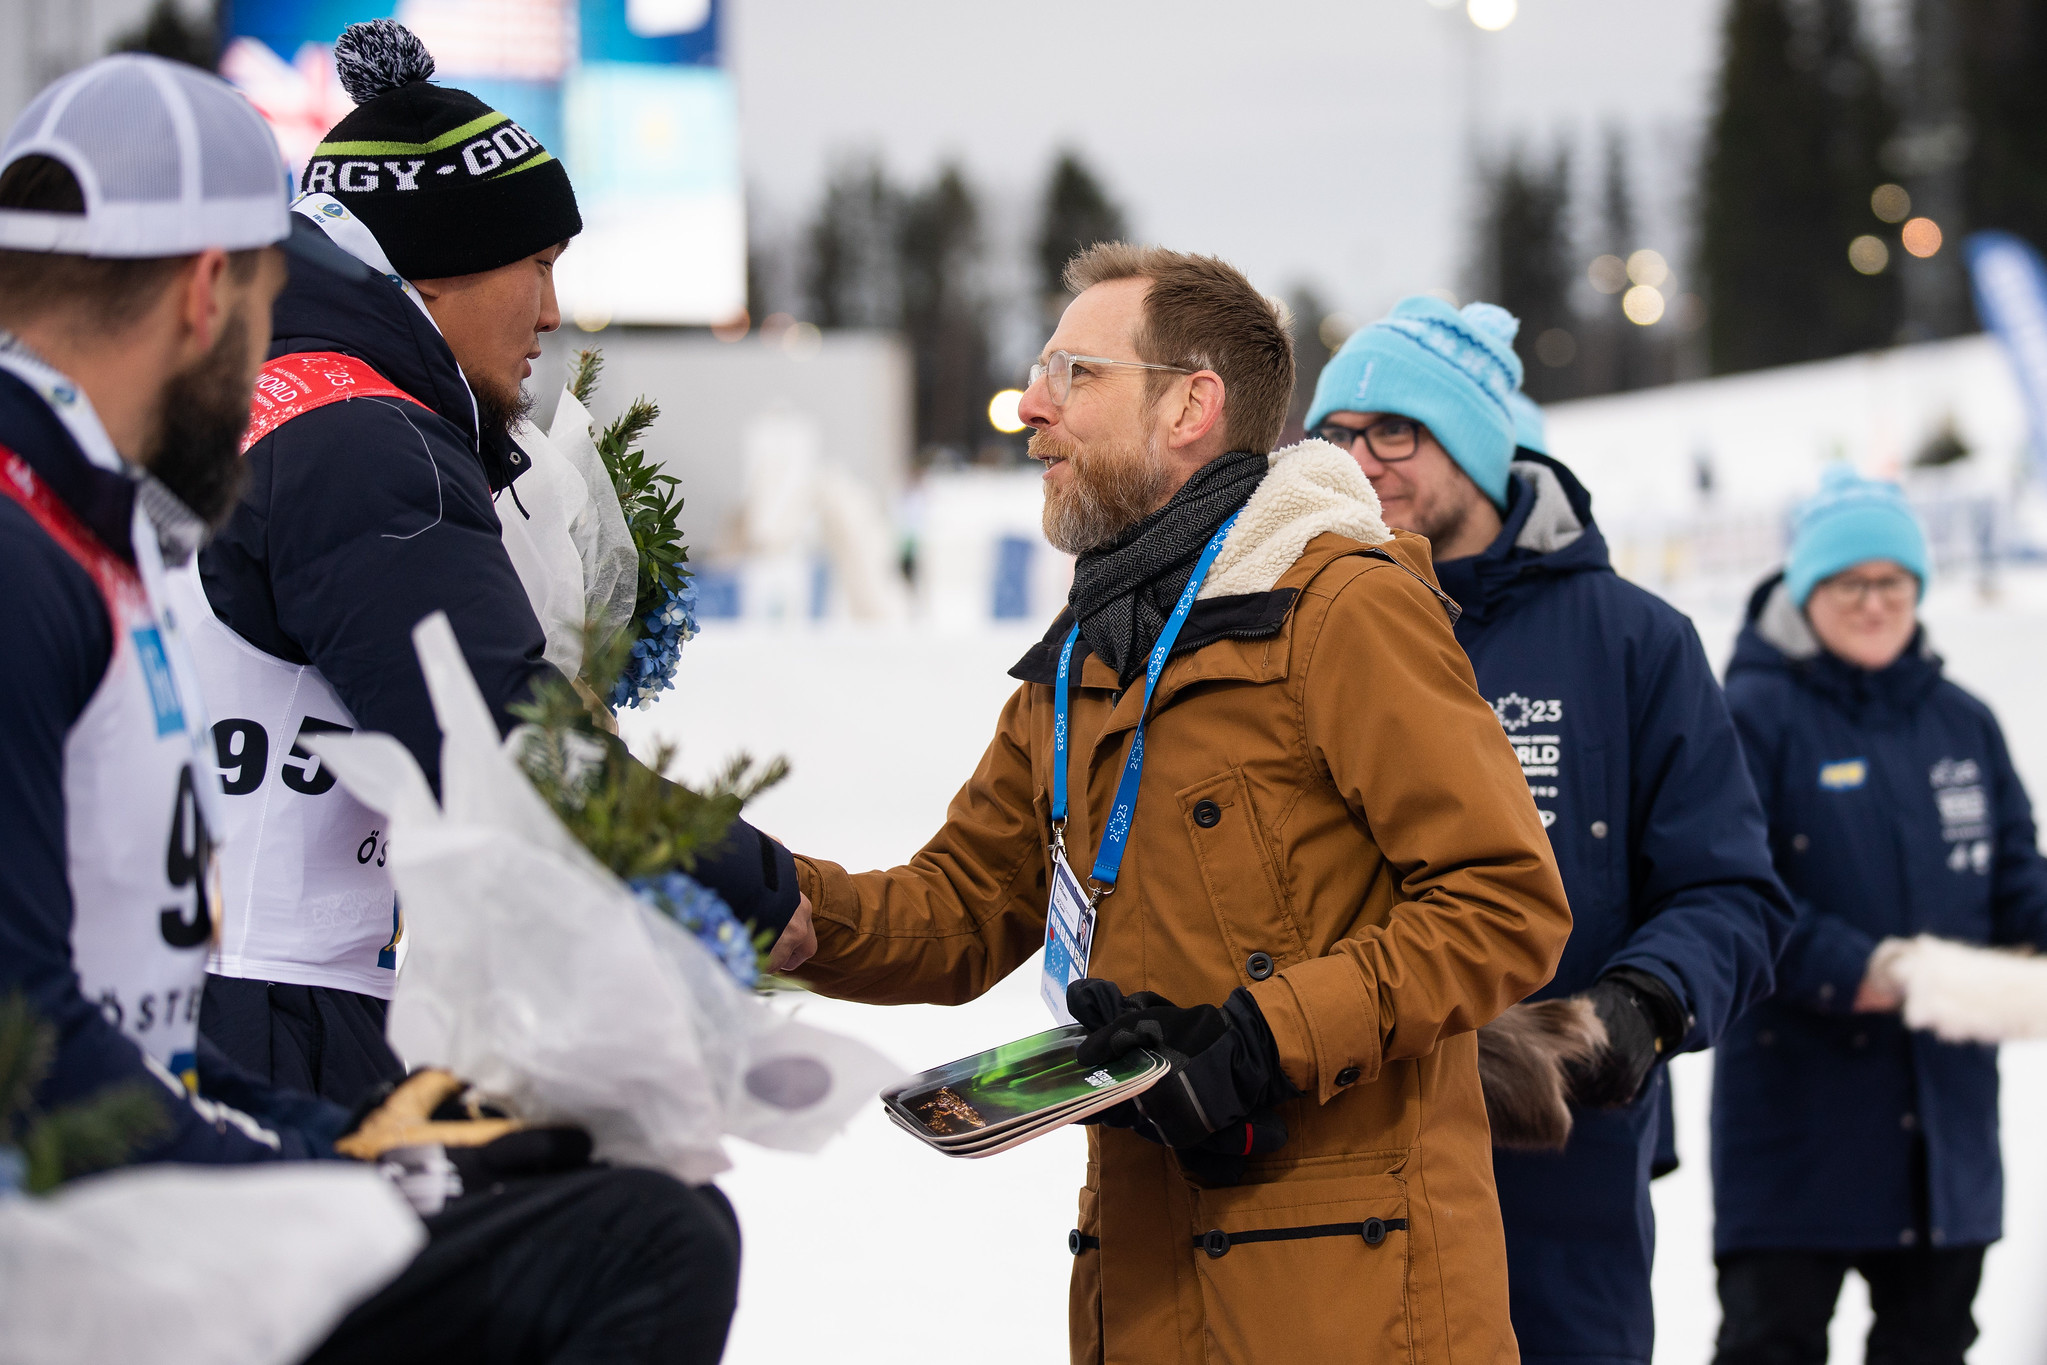 Jakob Forssmed är med på medaljceremonin och gratulerar åkarna. Bild tagen på Jakob i profil.